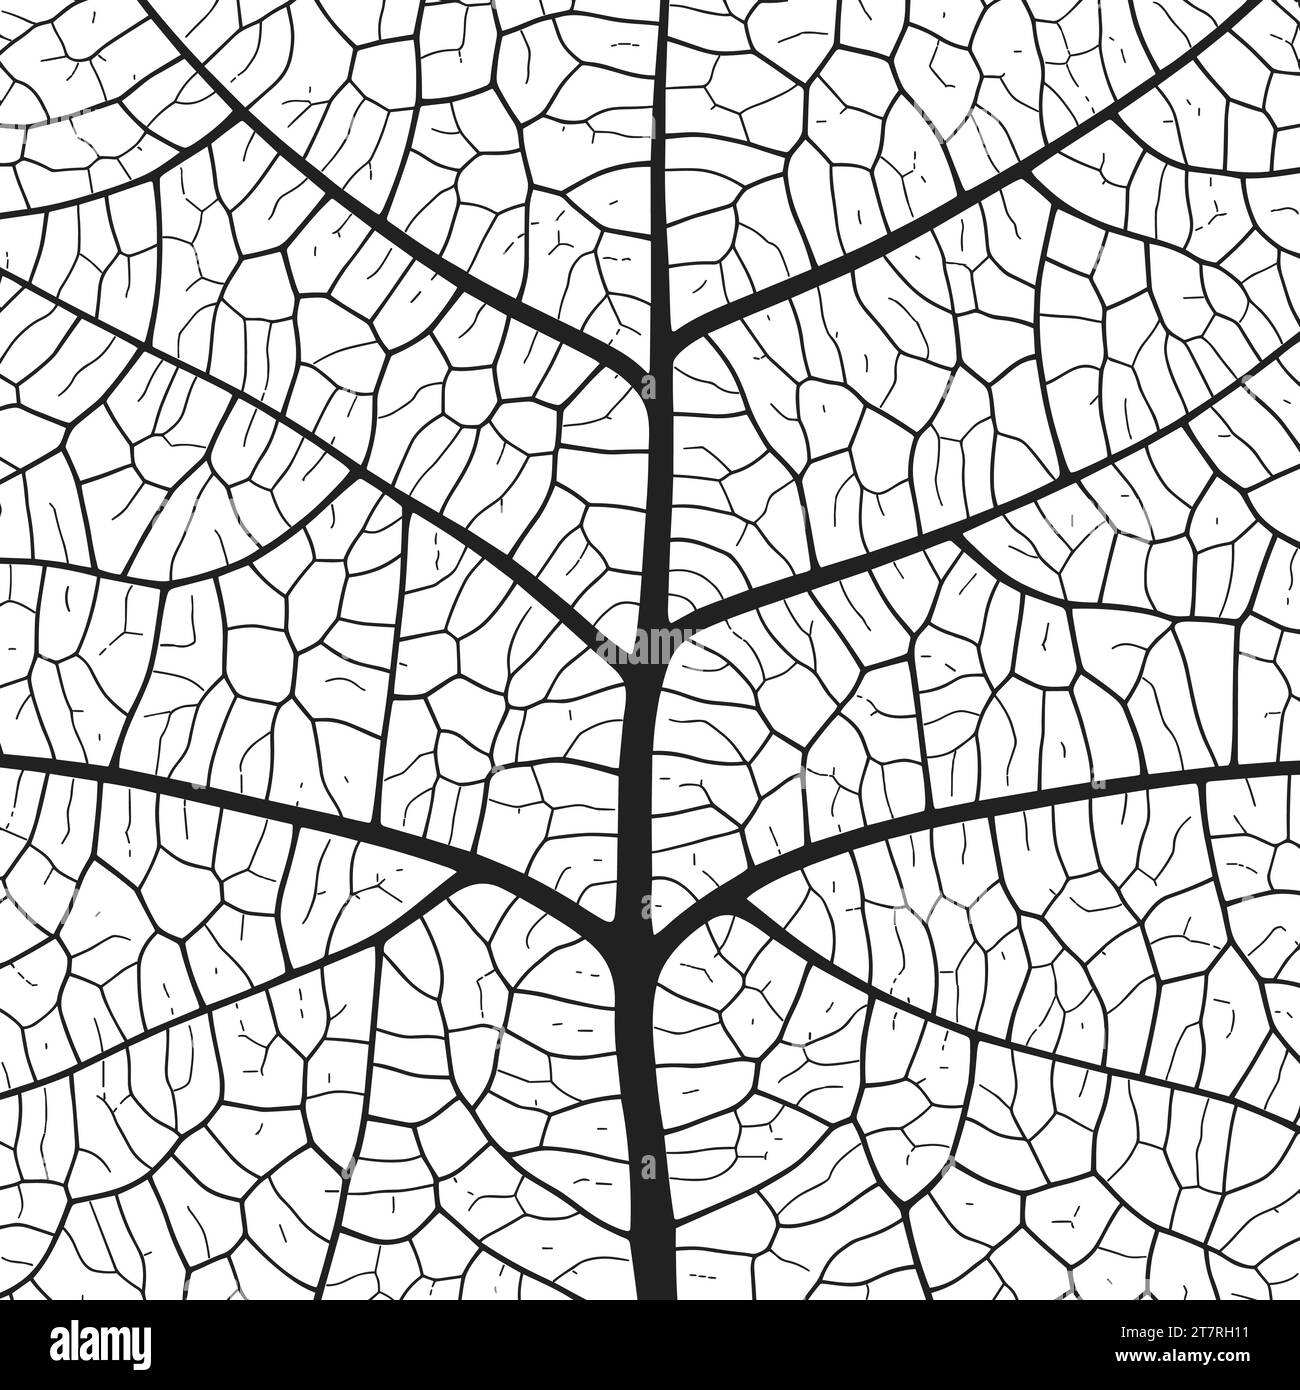 Abstrakter Hintergrund der Blattadertextur mit Nahaufnahme der Blattzellen-Ornament-Textur. Schwarzes und weißes organisches makrolineares Muster der Natur Stock Vektor